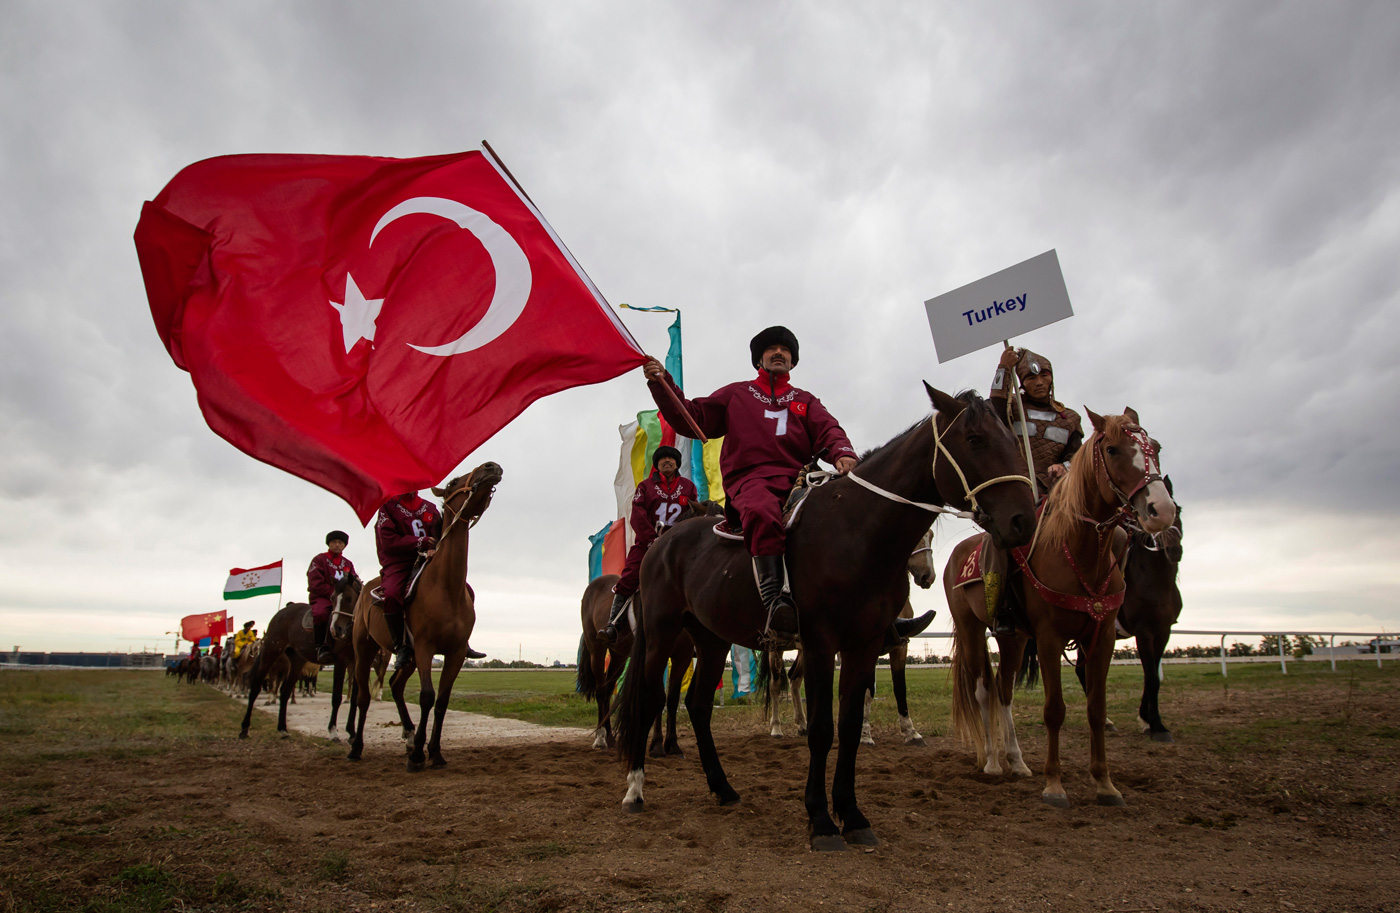 ՀՀ-ում կեղծ օրակարգերը շեղում են հանրությանը պանթուրքիզմի վտանգից